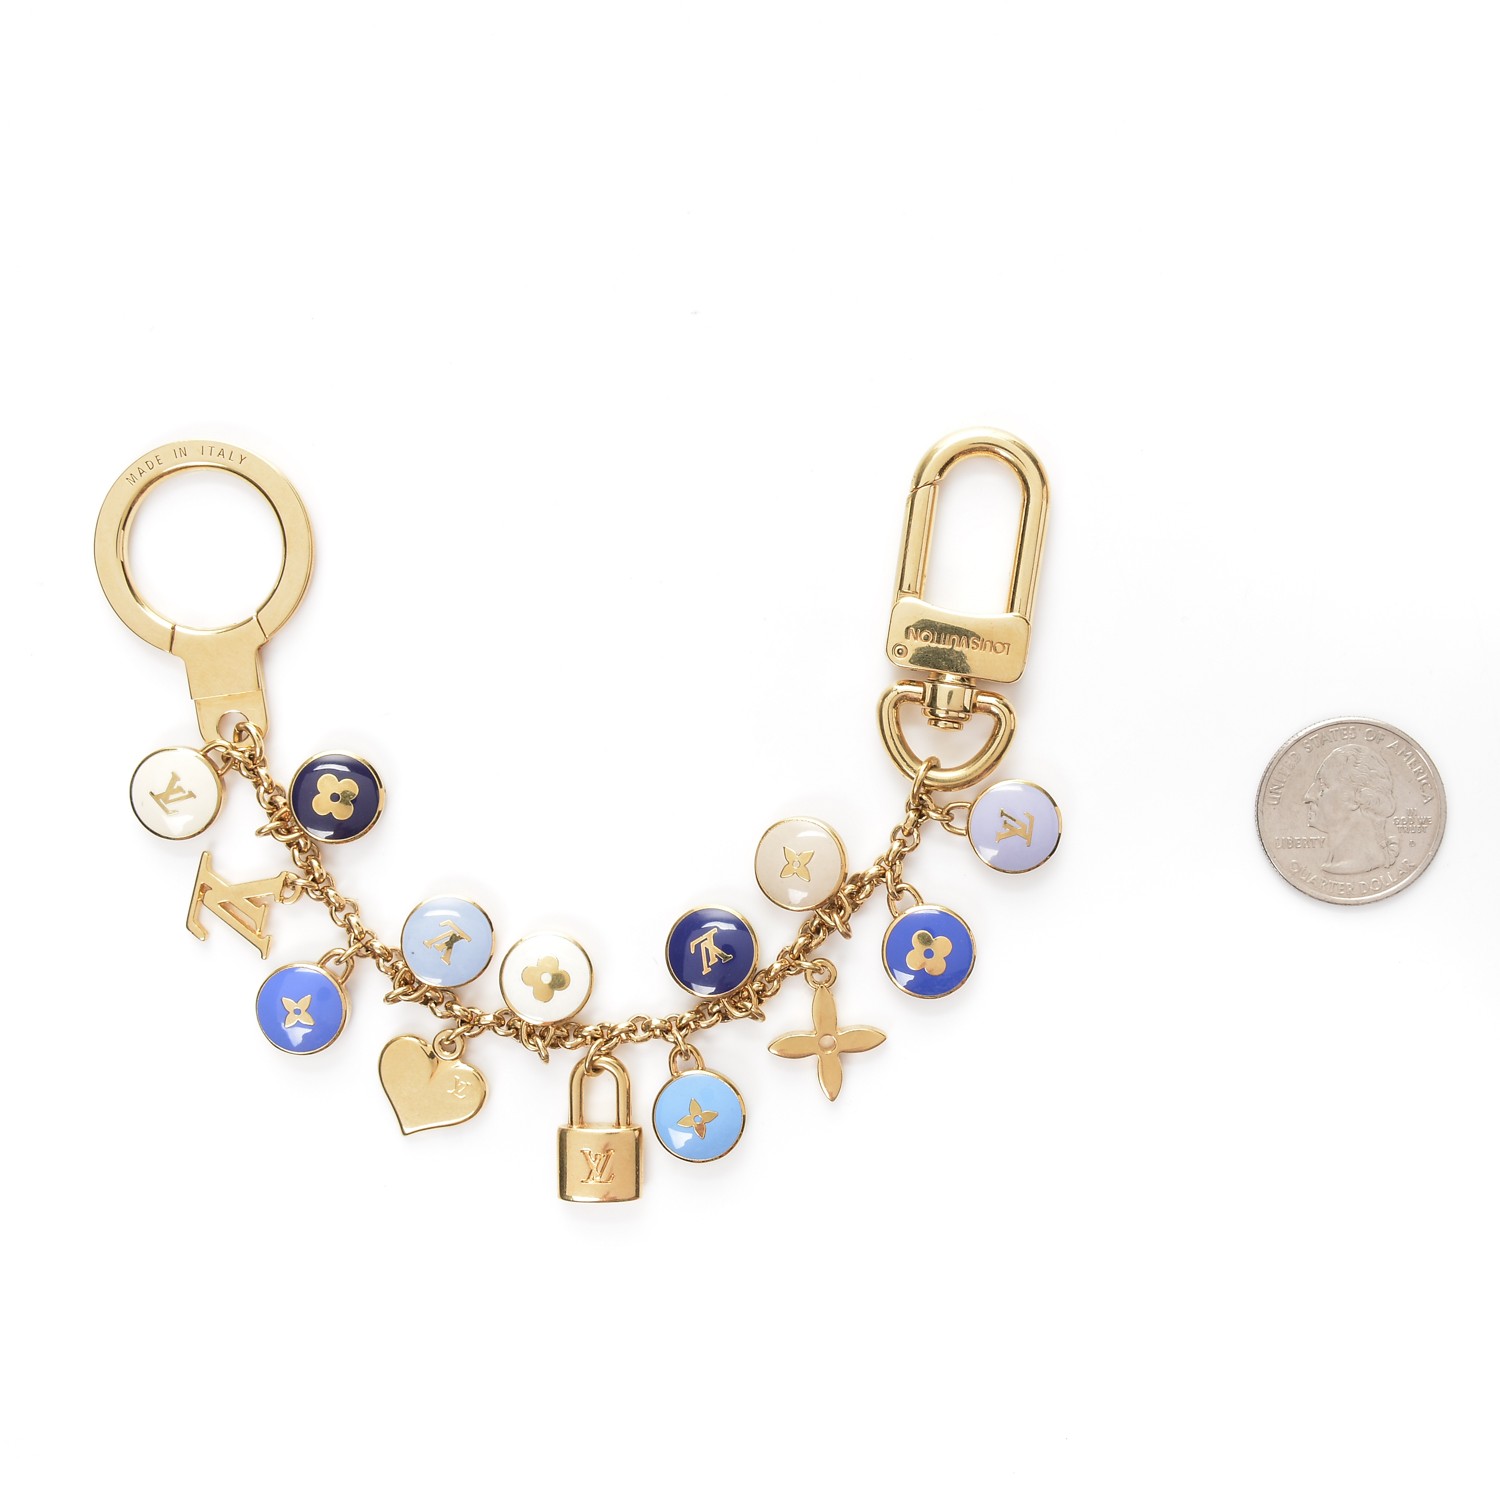 Louis Vuitton Pastilles Bag Charm - Brown Keychains, Accessories - LOU98130